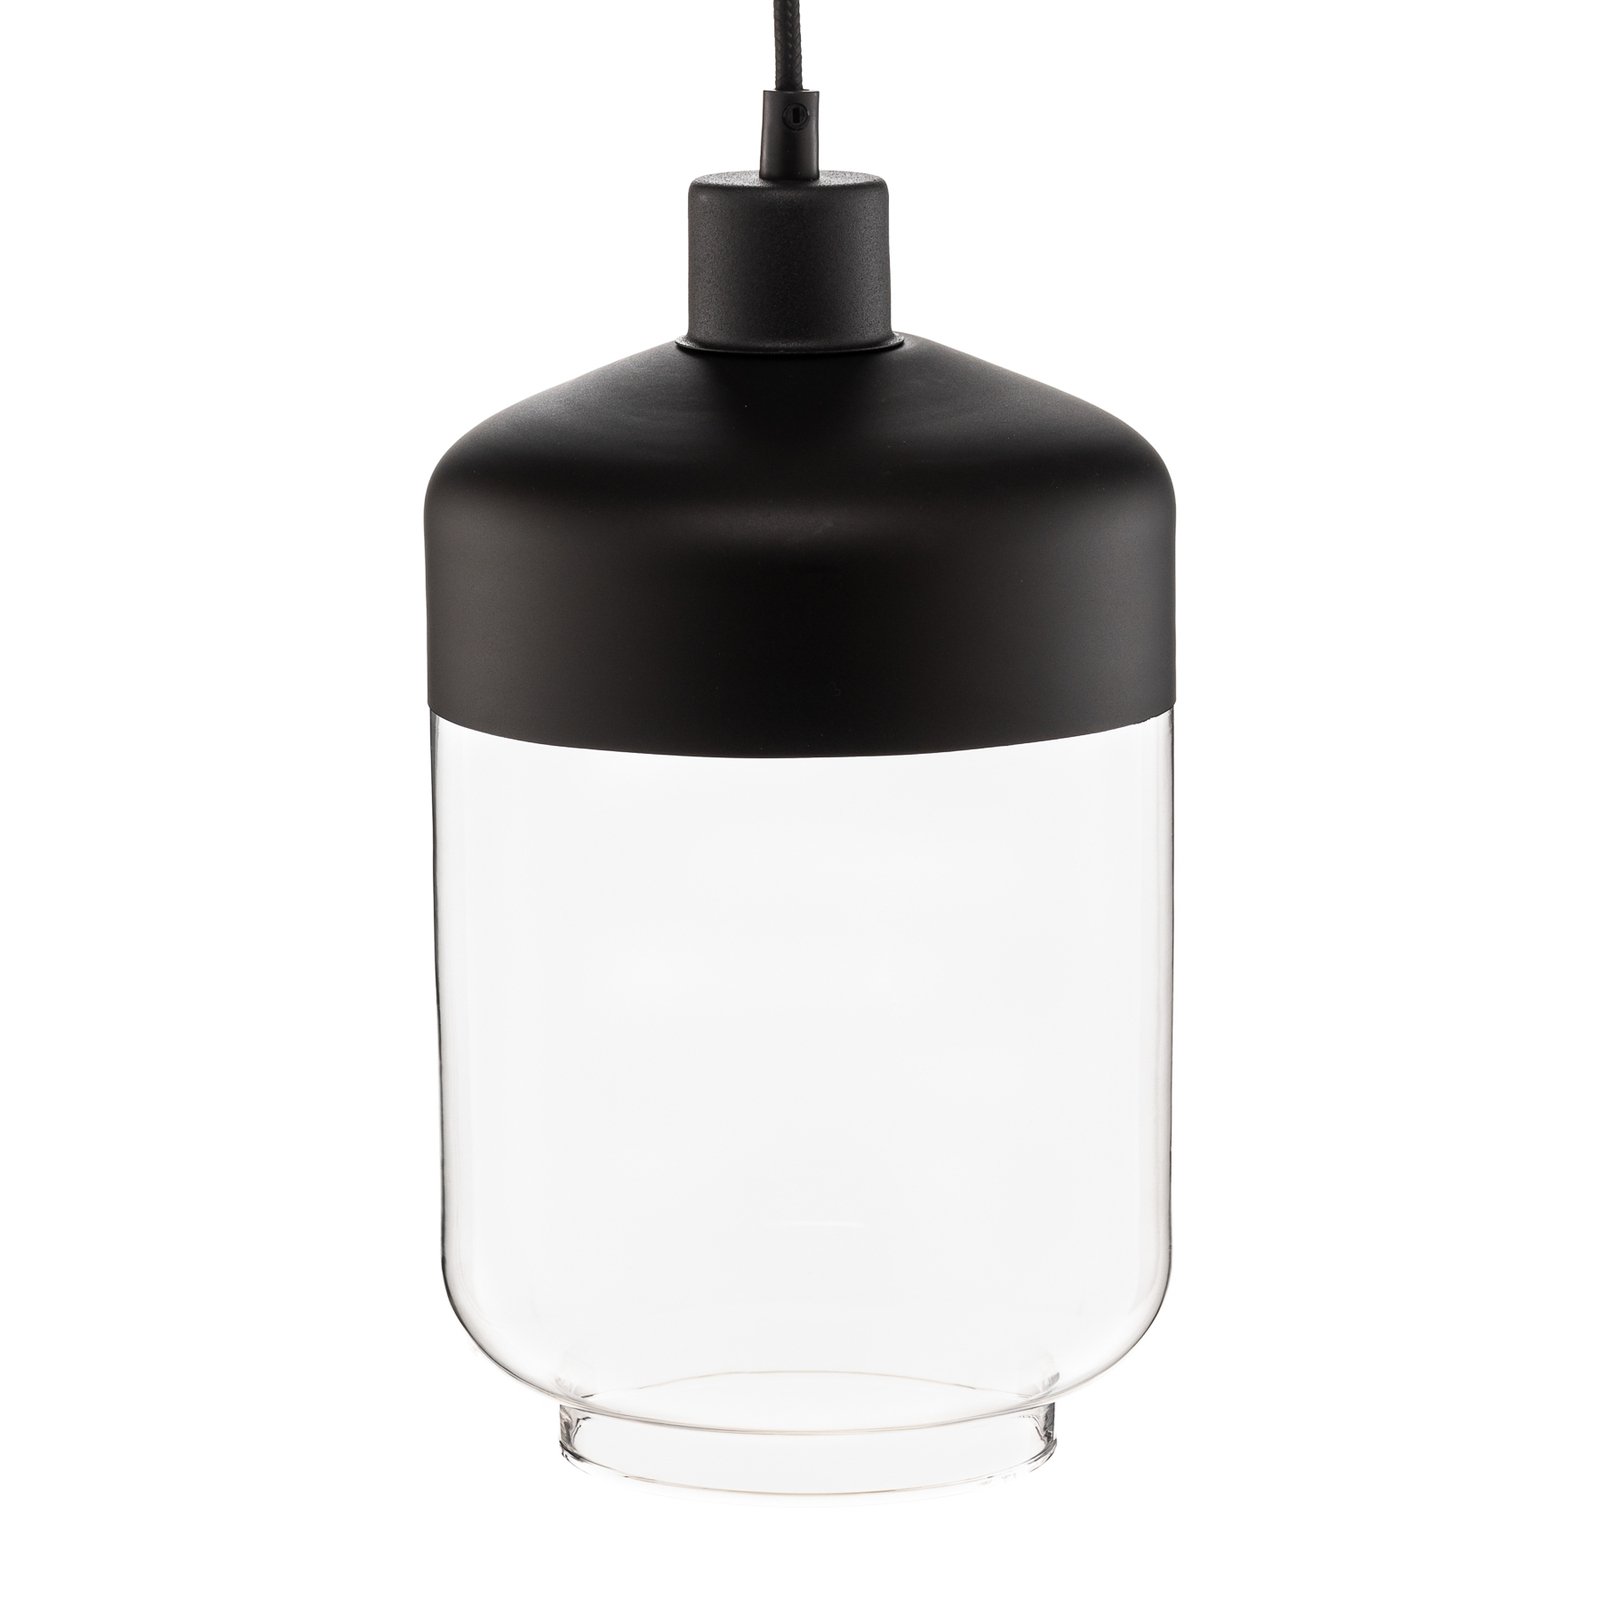 Hanglamp Monochrome Flash helder/zwart Ø 17cm